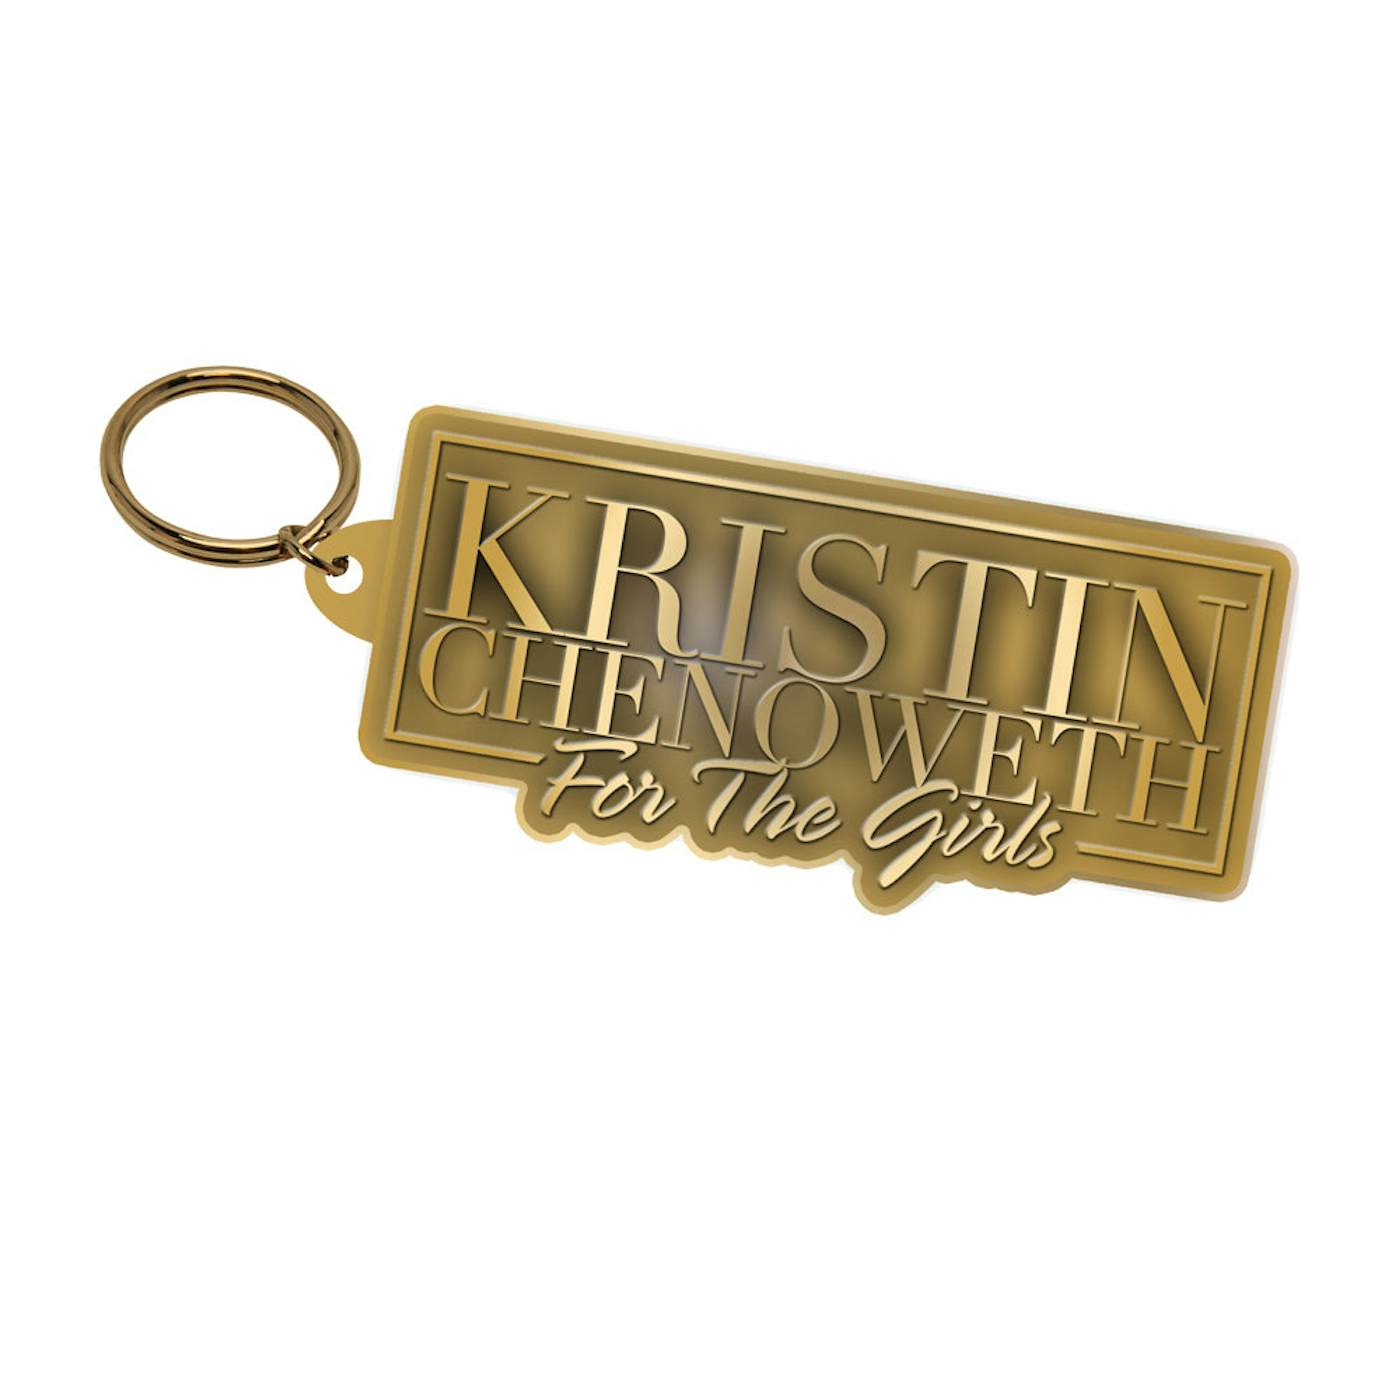 Kristin Chenoweth For The Girls Antique Brass Keychain